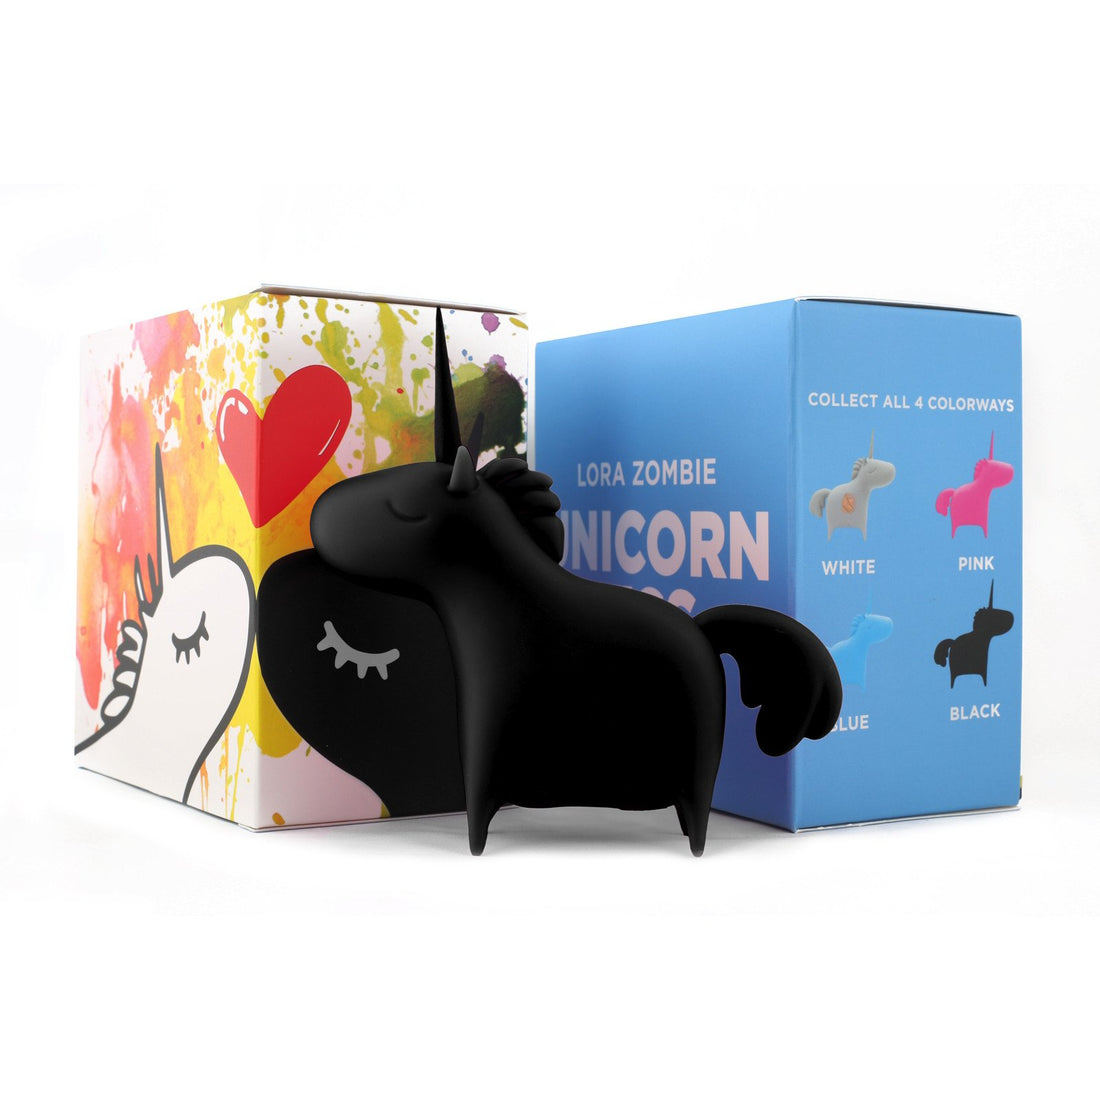 Unicorn Kiss Vinyl Toy Black